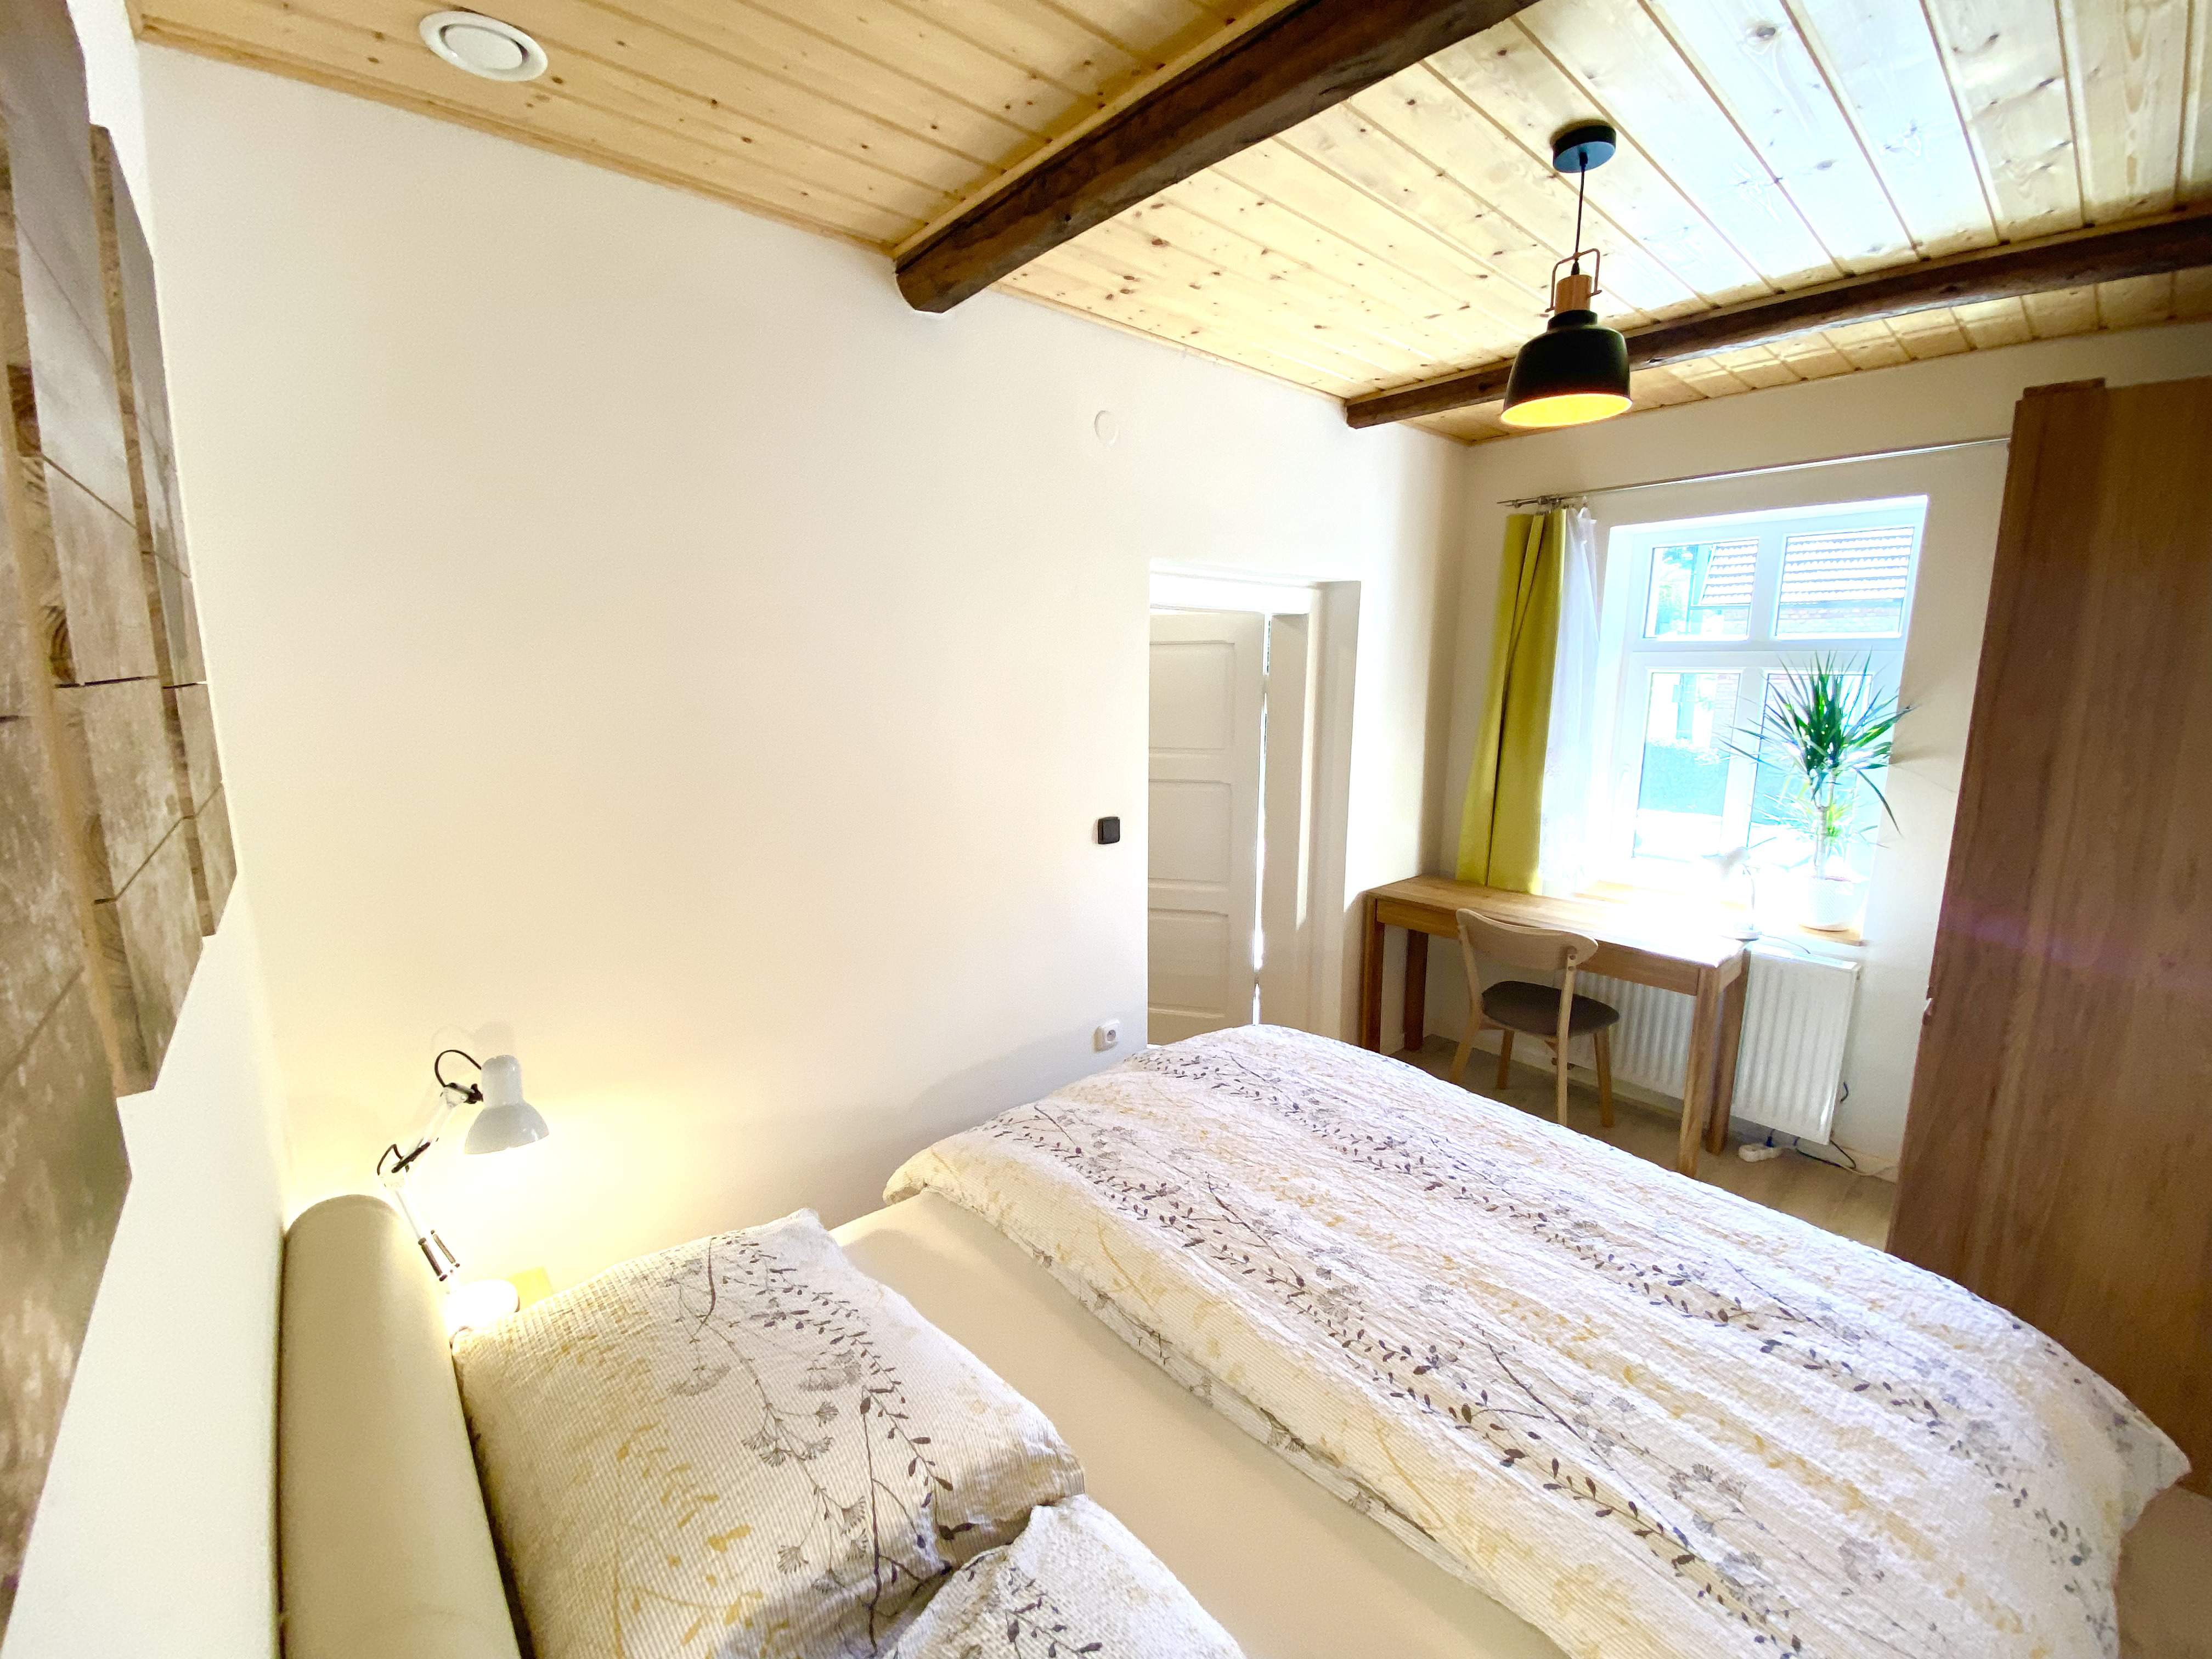 V 1. patře Stodoly je jedna útulná ložnice s manželskou postelí (160cm). Je zde také umístěn psací s